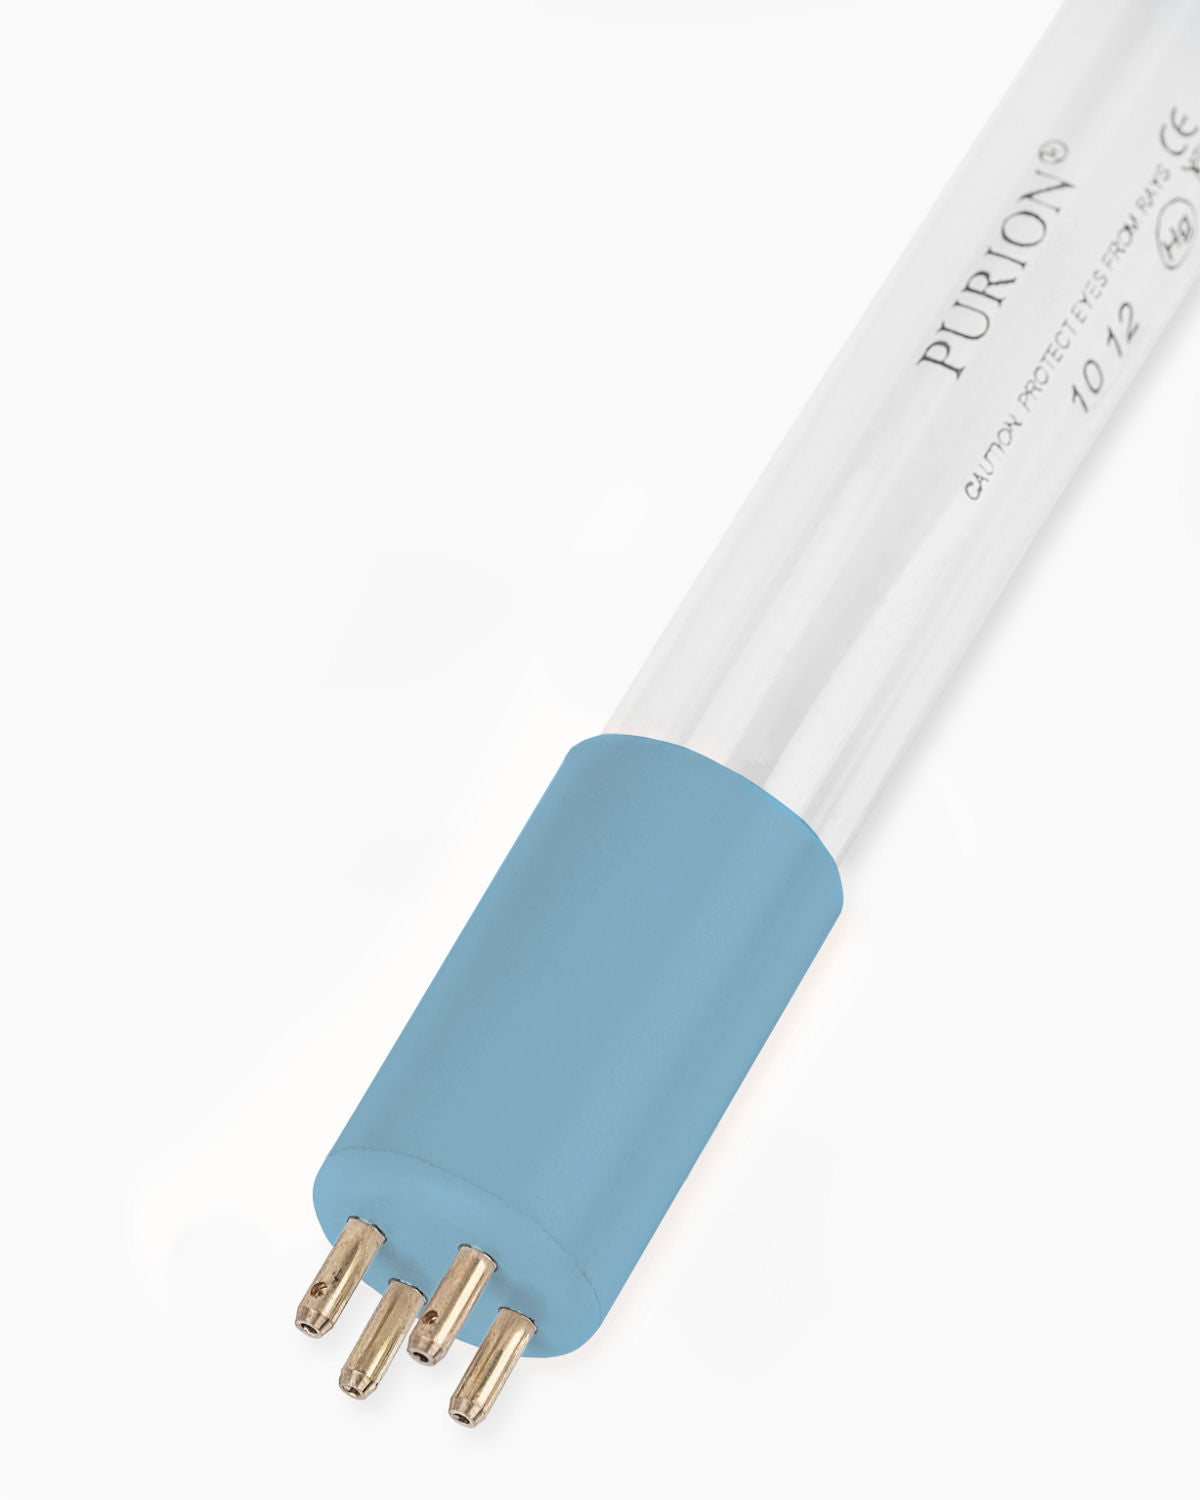 Eine blaue Lichtröhre auf weißem Hintergrund, verwendet als PURION UVC Lampe 36W für die UV-Desinfektionsanlage PURION 2500 36W der PURION GmbH.